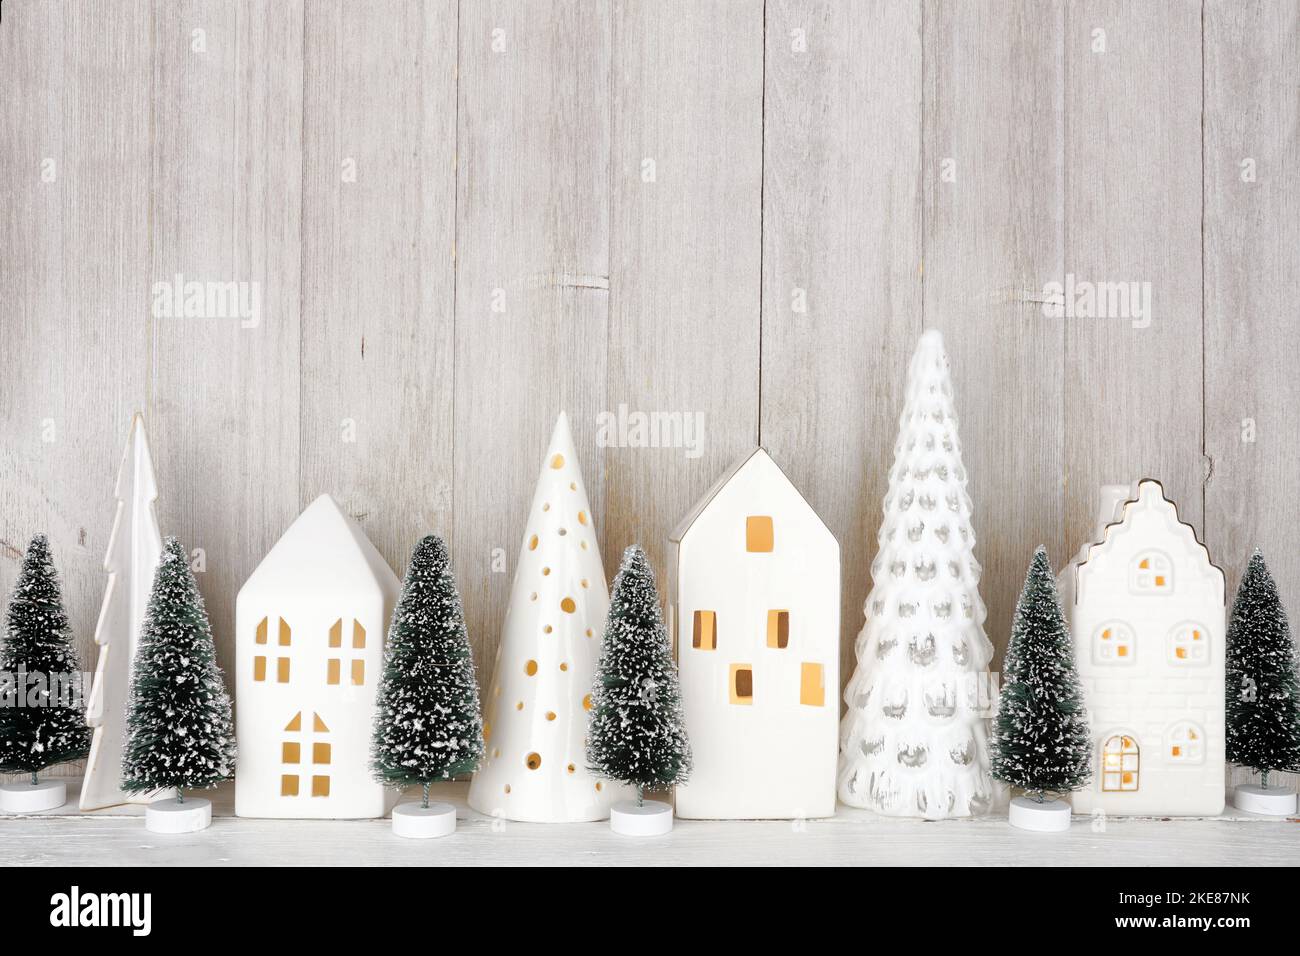 Decorazioni moderne sugli alberi di Natale e case bianche su una mensola su uno sfondo rustico grigio parete Foto Stock